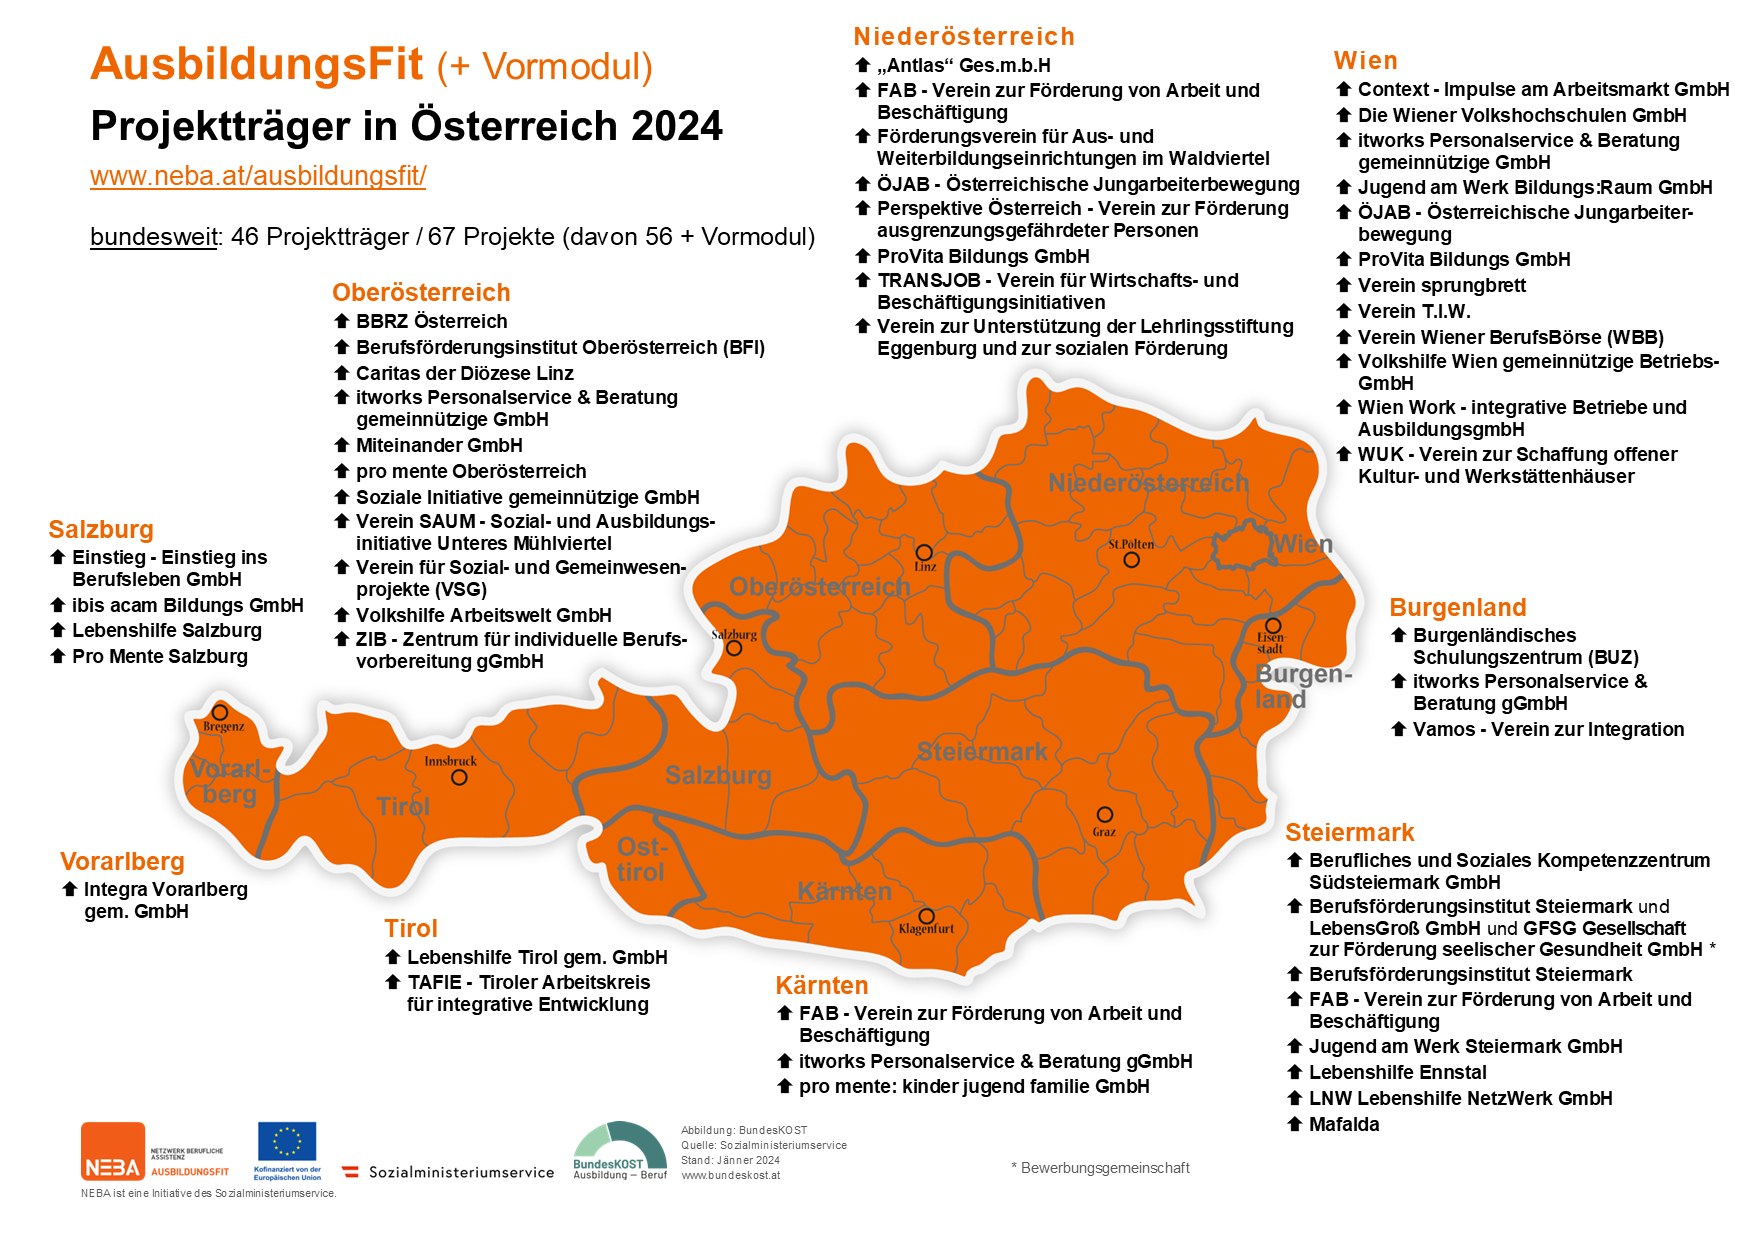 Karte von Österreich mit AusbildungsFit Projekten, siehe auch barrierefreie Textversion AusbildungsFit Projektträger 2024 (PDF)